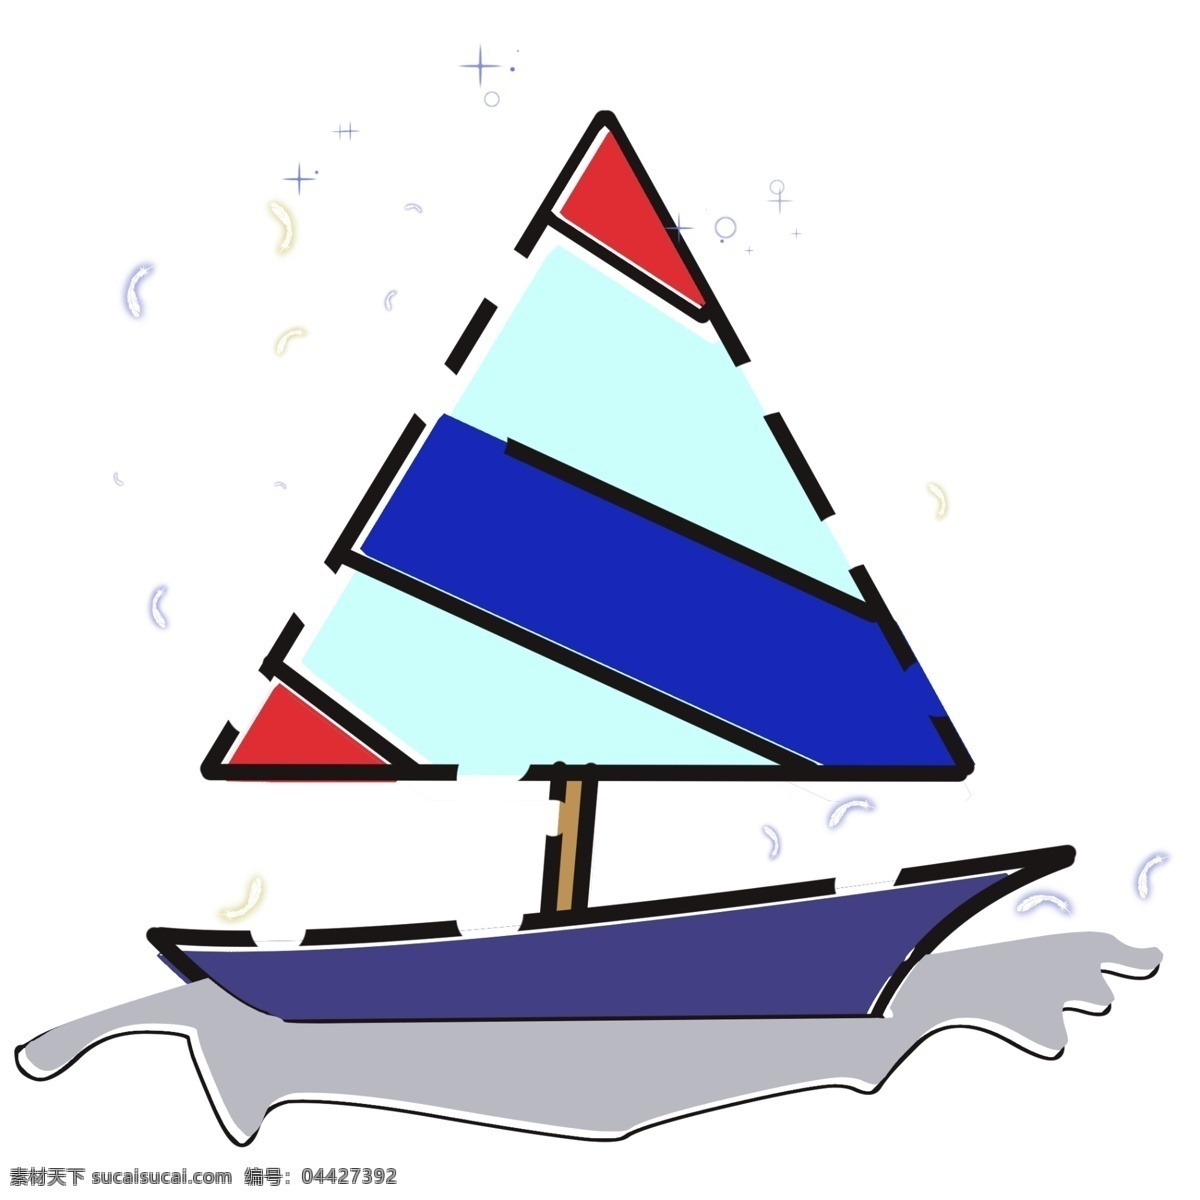 三角形 条纹 帆船 船只 交通工具